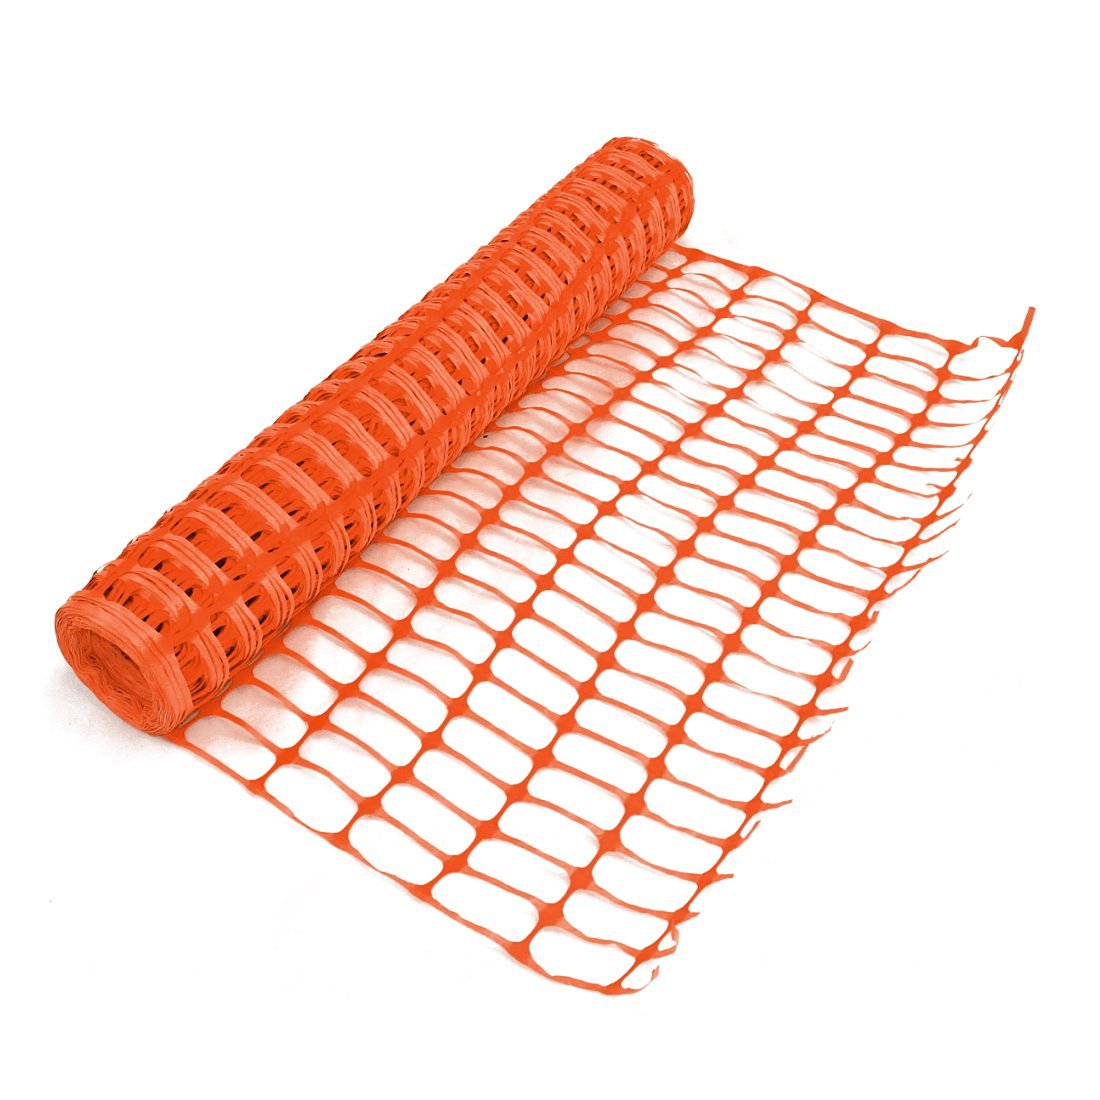 Heavy Duty Orange Safety Barrier Mesh Fencing 1mtr x 25mtr